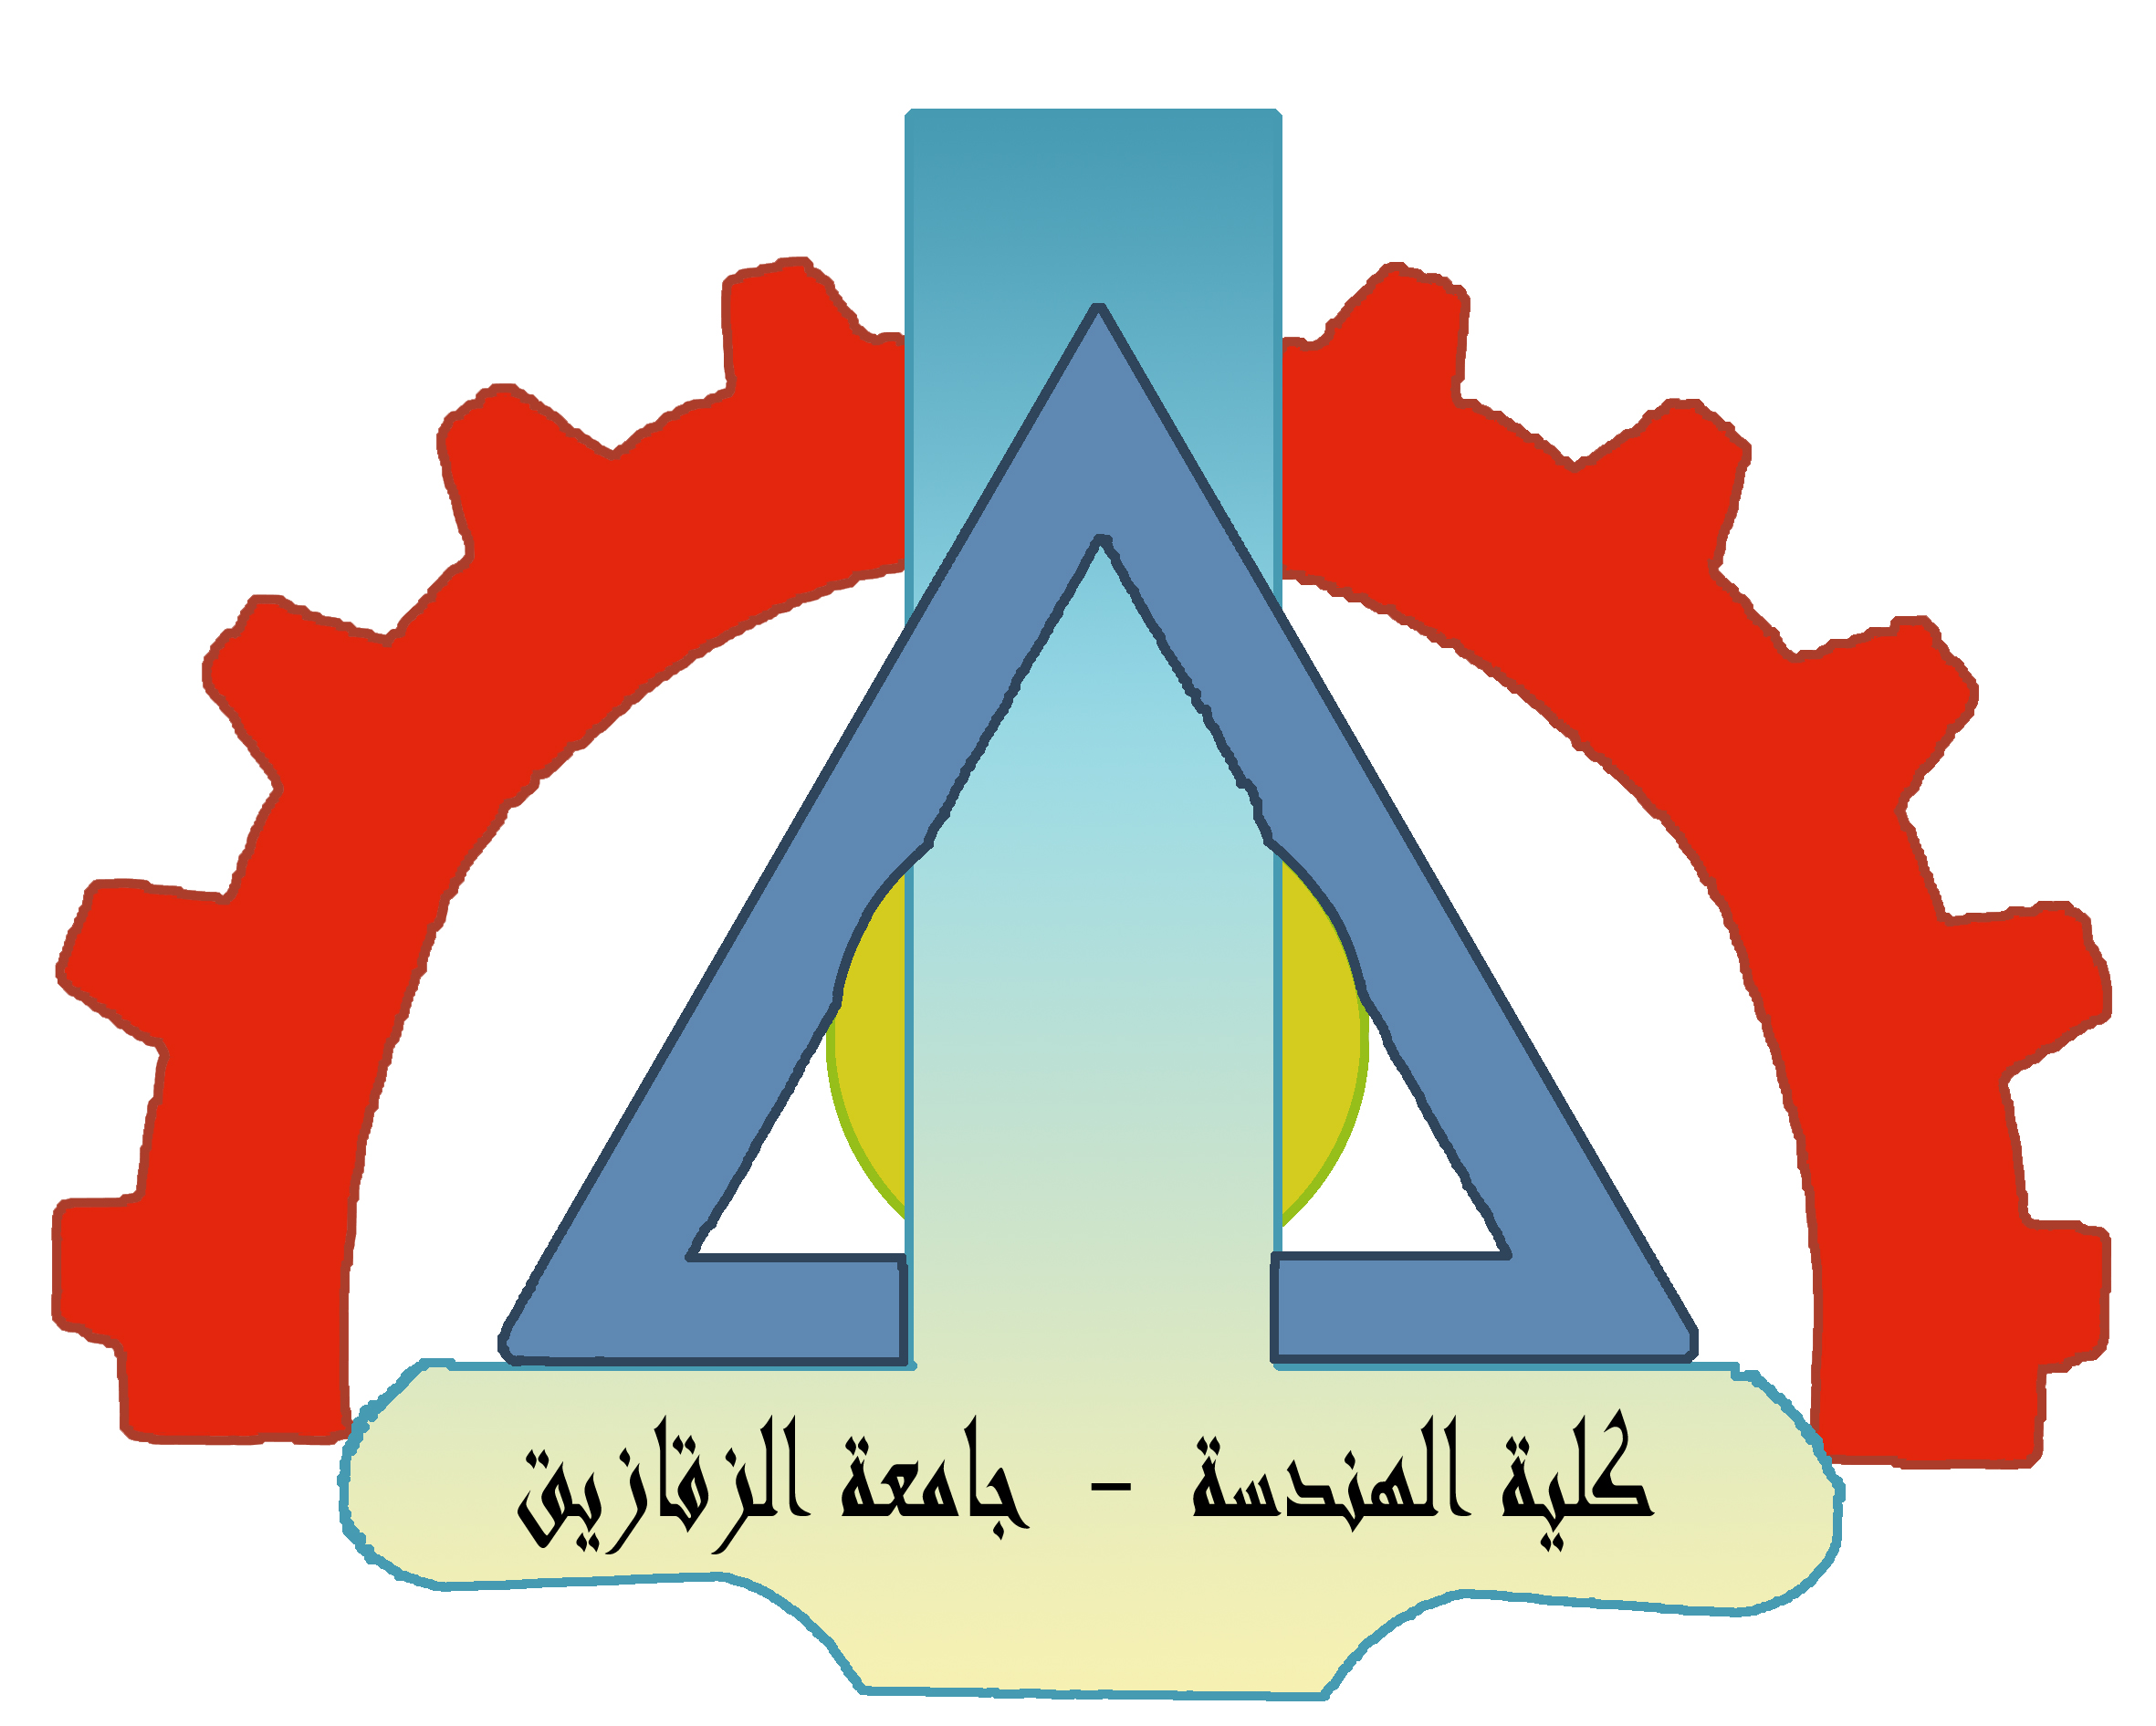 موافقة مجلس كلية الهندسة على الطلب المقدم من الدكتور عبد الناصر حسين رياض للنقل الى كلية الحاسبات